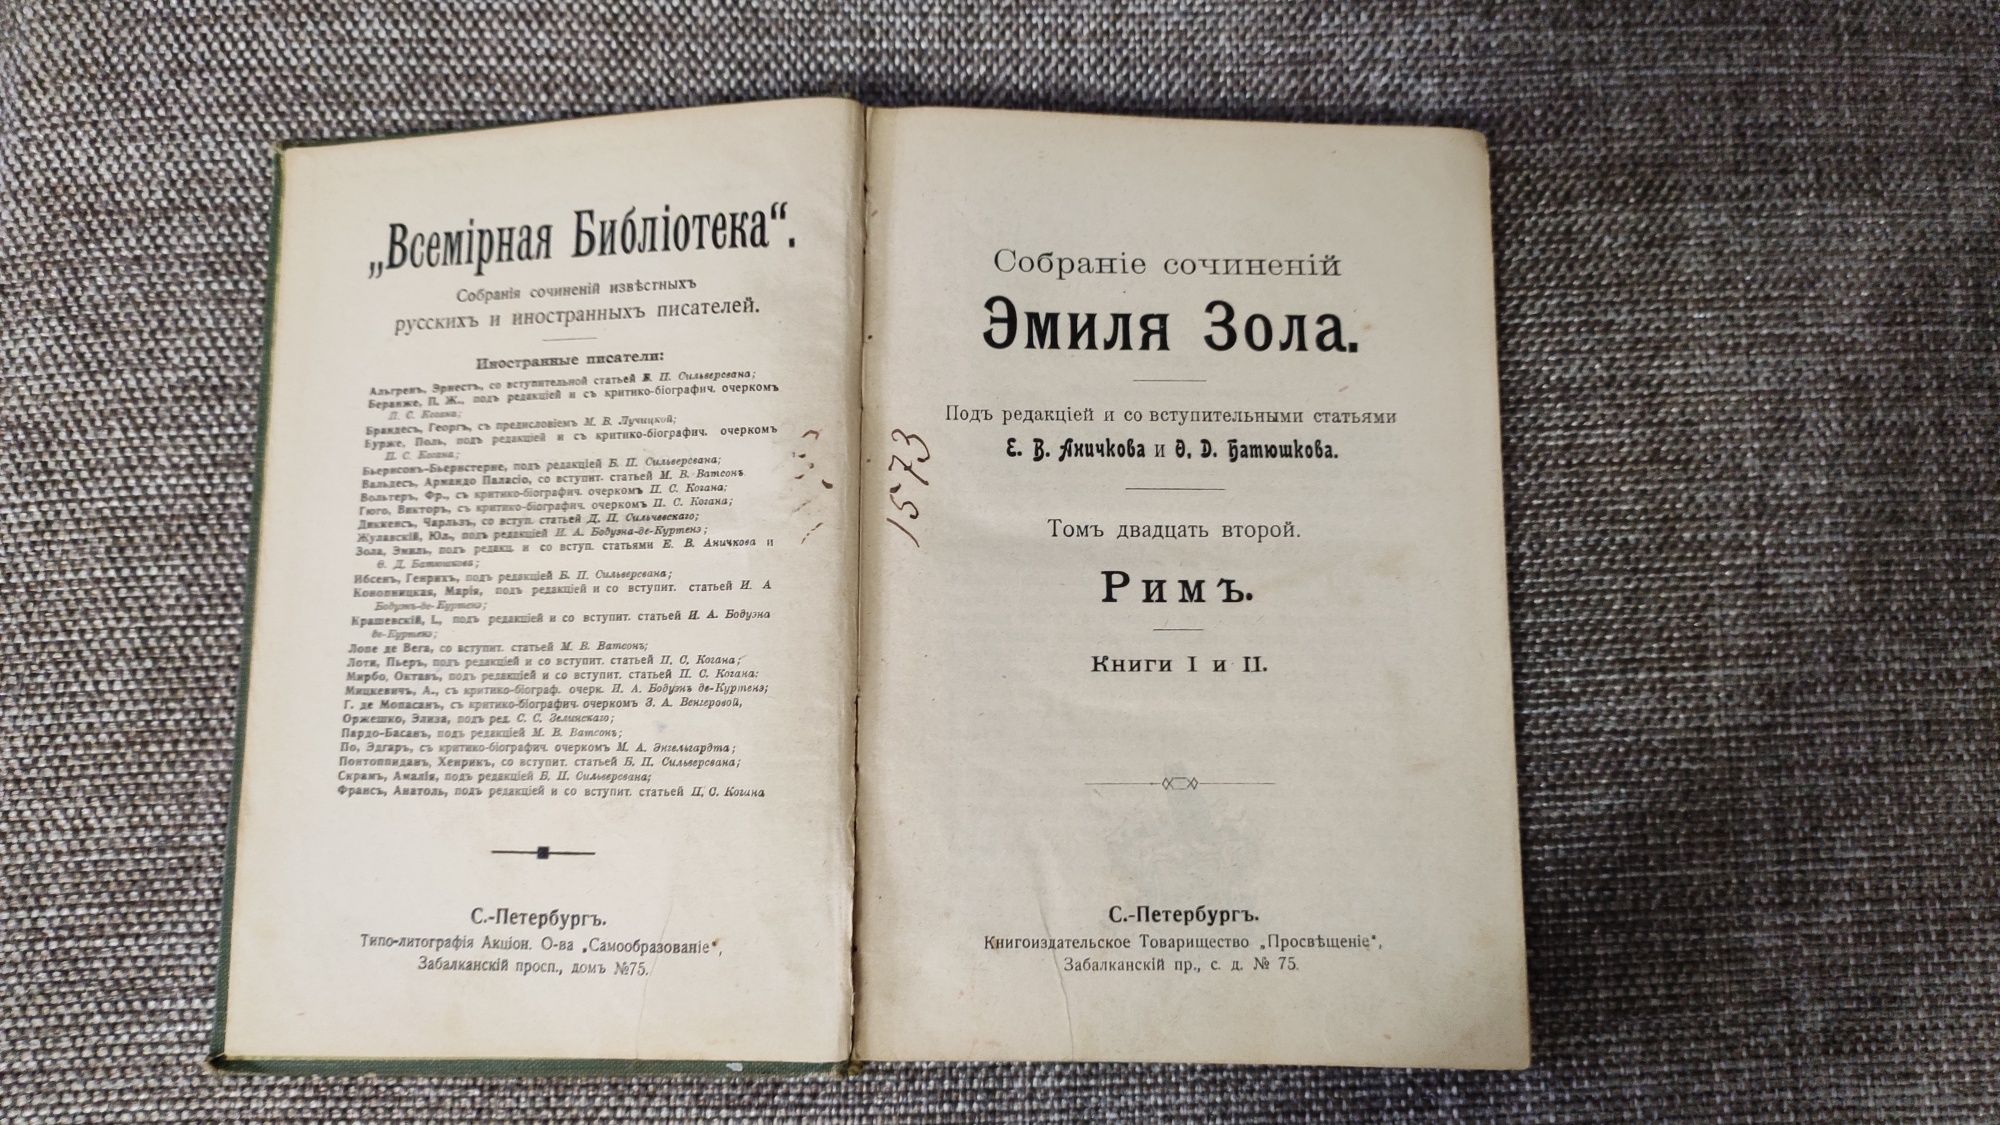 Антикварная книга 1915 года выпуска Эмиля Золя "Сочинения"